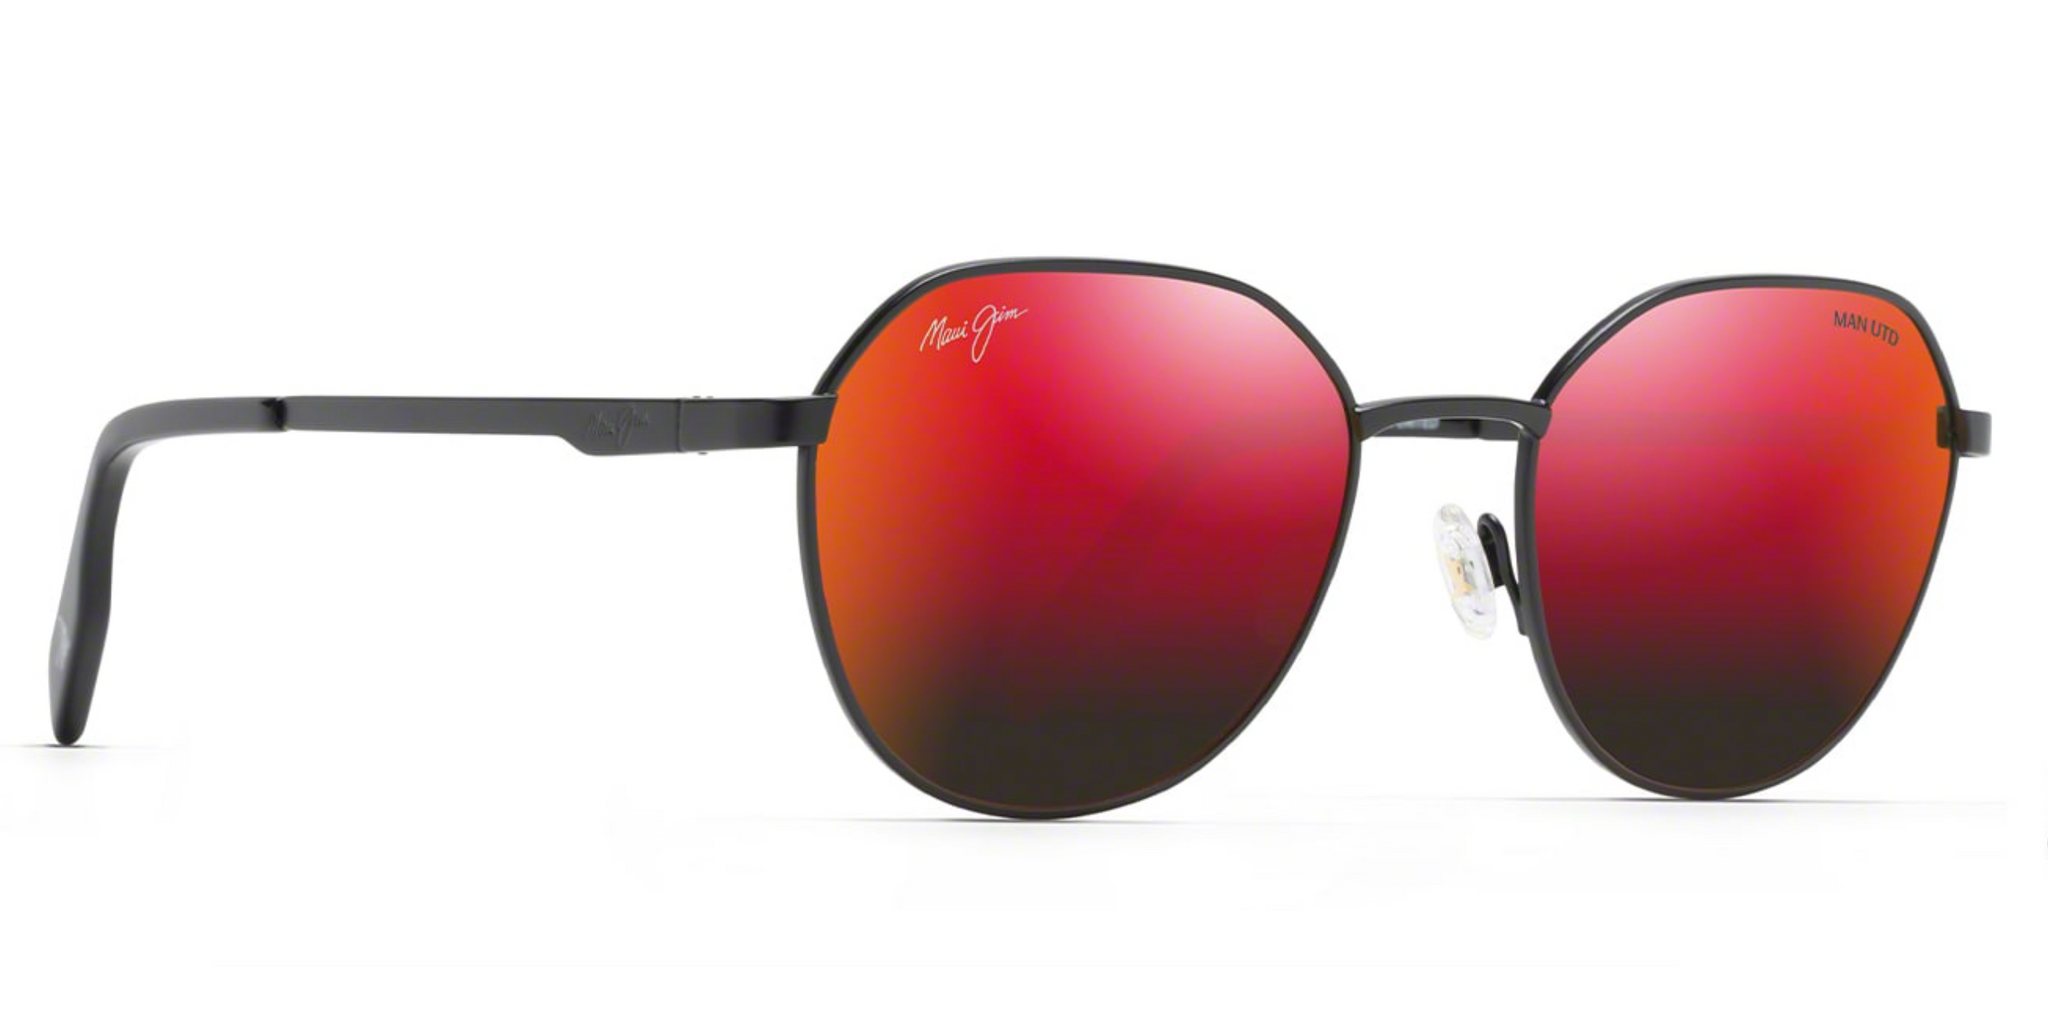 Maui Jim Hukilau 845 Sunglasses: DGS845-16, DSB845-11, DBS845-02C,  RM845-02UTD, 845-17UTD Flight Sunglasses